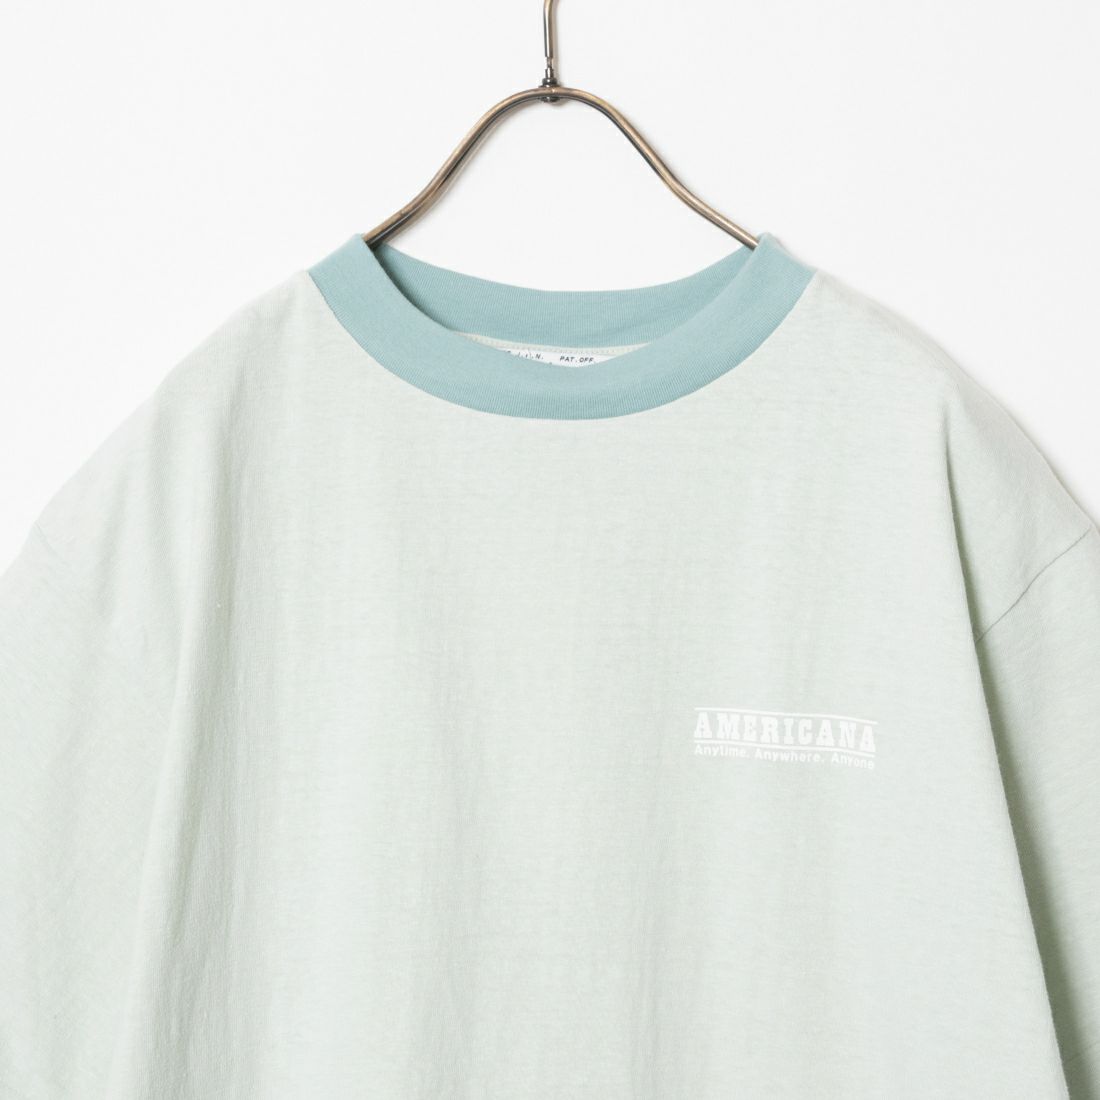 Americana [アメリカーナ] ショートスリーブ リンガーTシャツ [BRF-701A-3] ﾐﾝﾄ